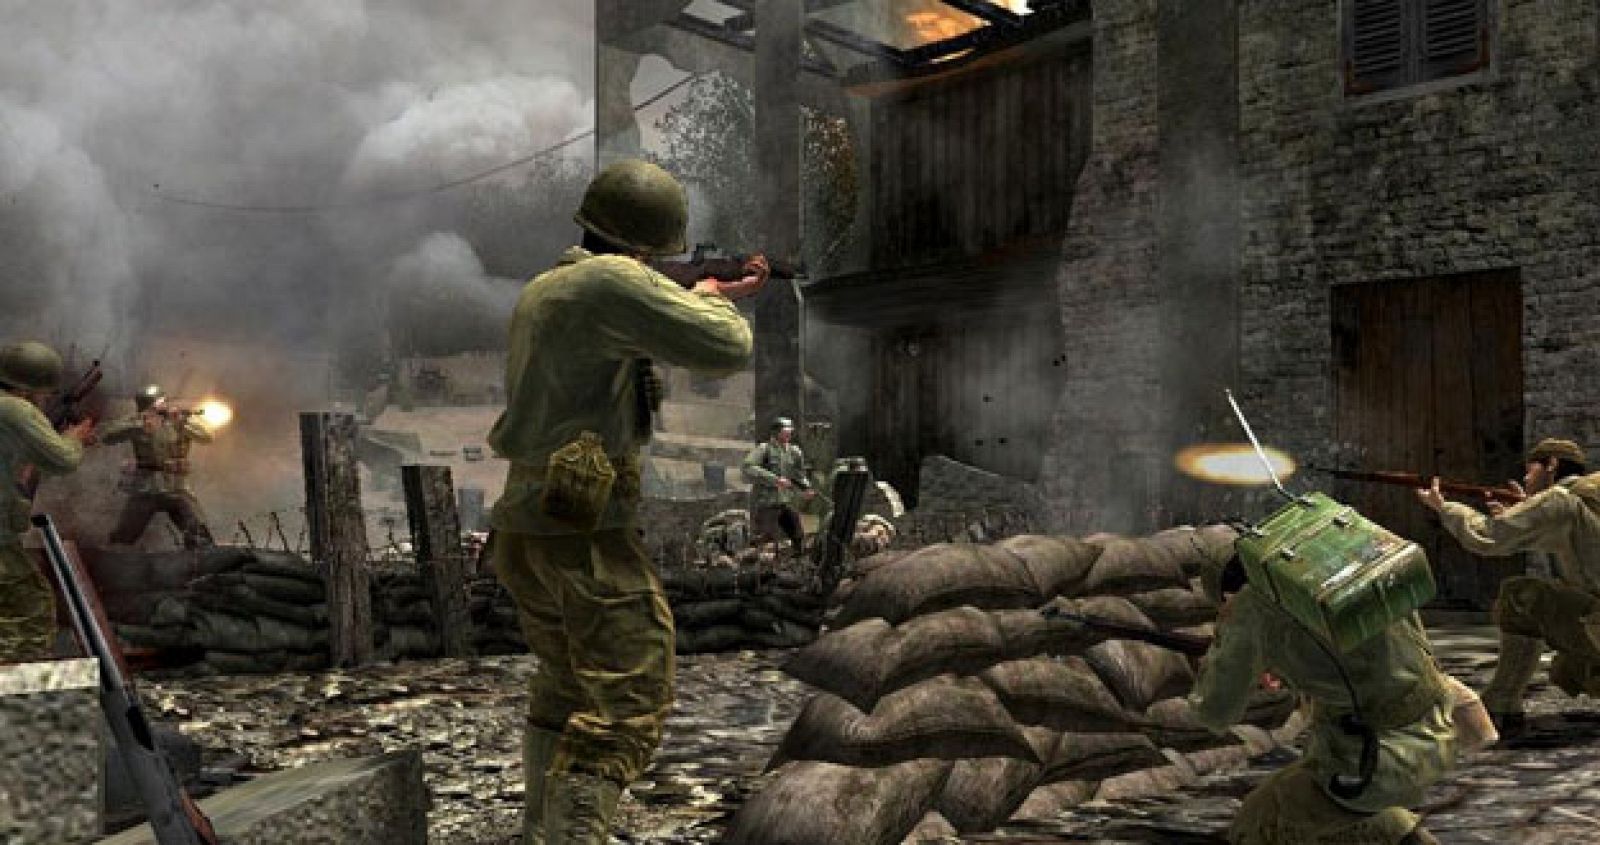 Imagen del videojuego 'Call of duty', en el que podría inspirarse el Pentágono.